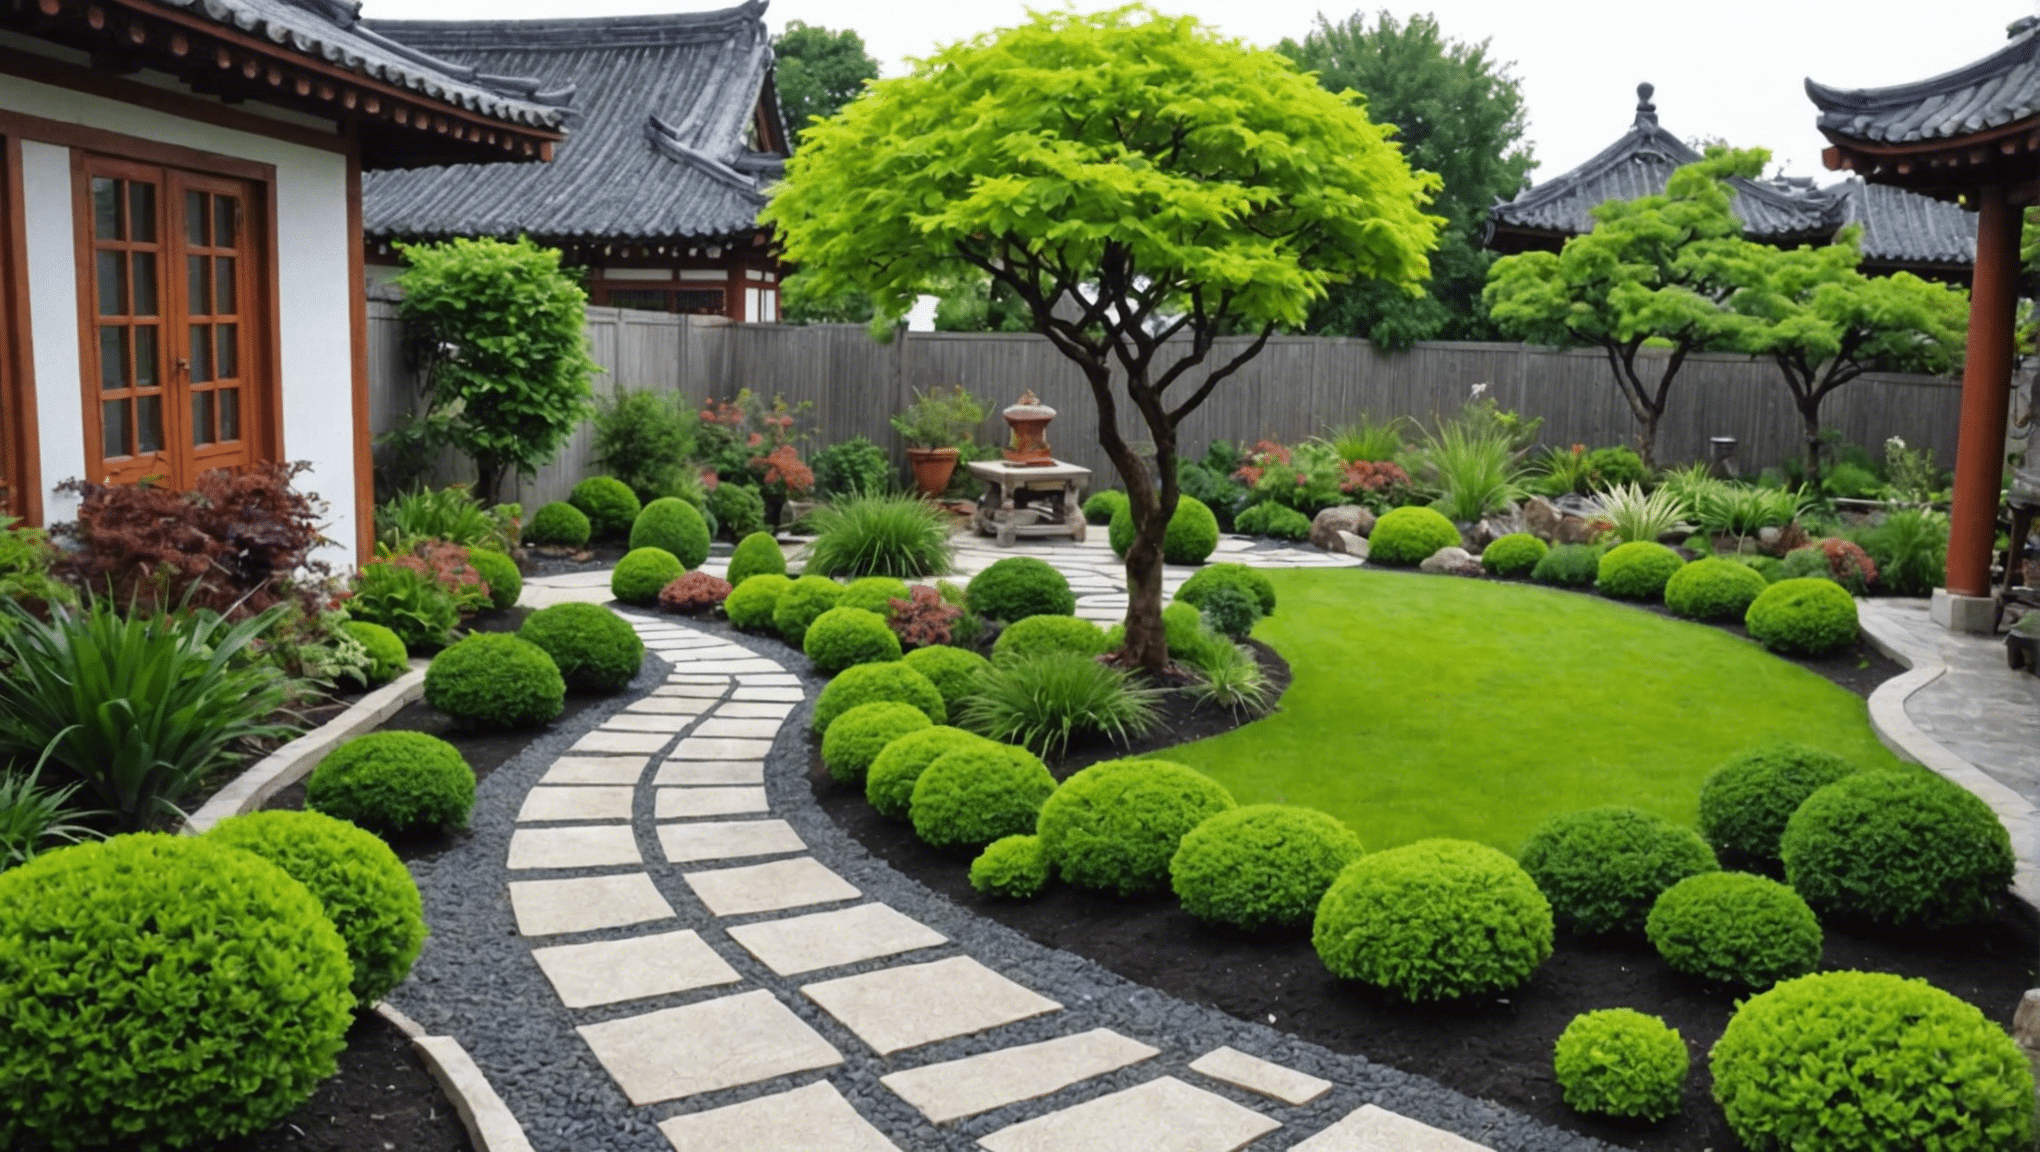 私たちの専門家のヒントとインスピレーションを活用して、屋外スペースに創造的で刺激的なアジア風ガーデニングのアイデアを見つけてください。伝統的な日本庭園から現代的な禅のデザインまで、屋外のオアシスに最適なインスピレーションを見つけてください。